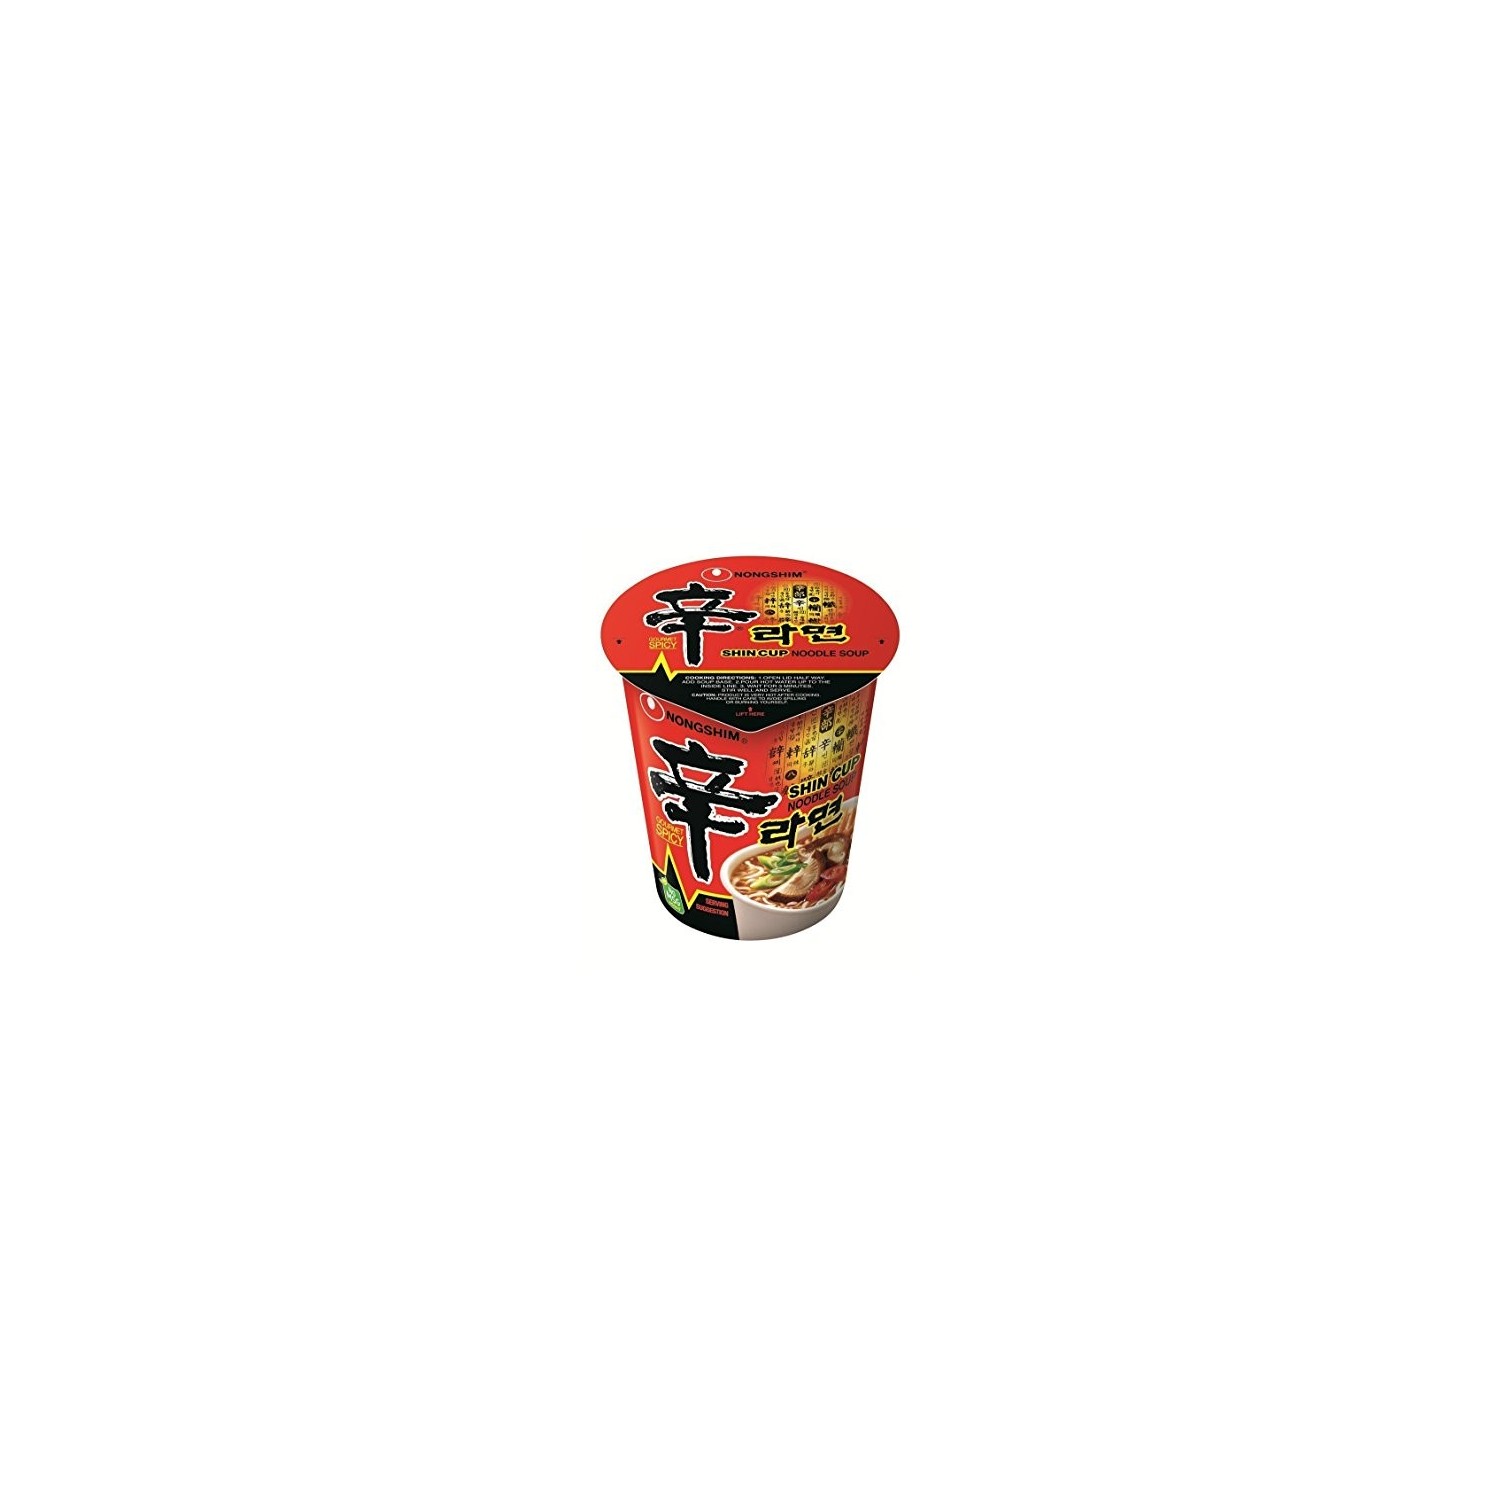 Nongshim Shin Cup Noodle Soup 68g Spicy Shin Cup Noodles - 8801043031011